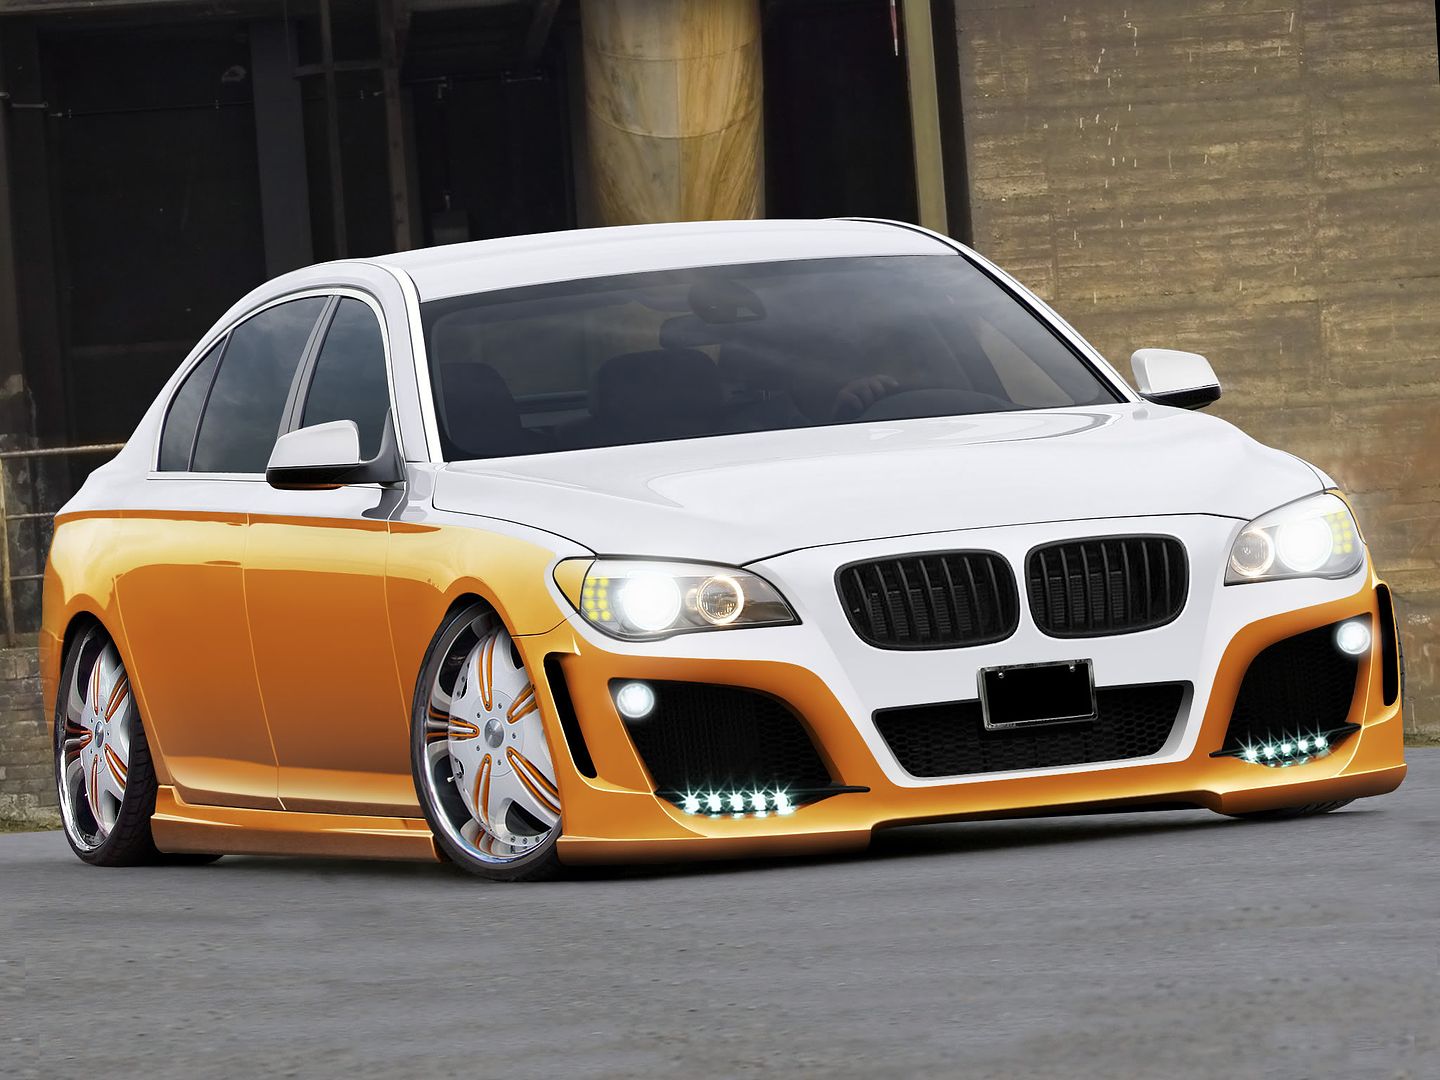 BMW 7series VIP car